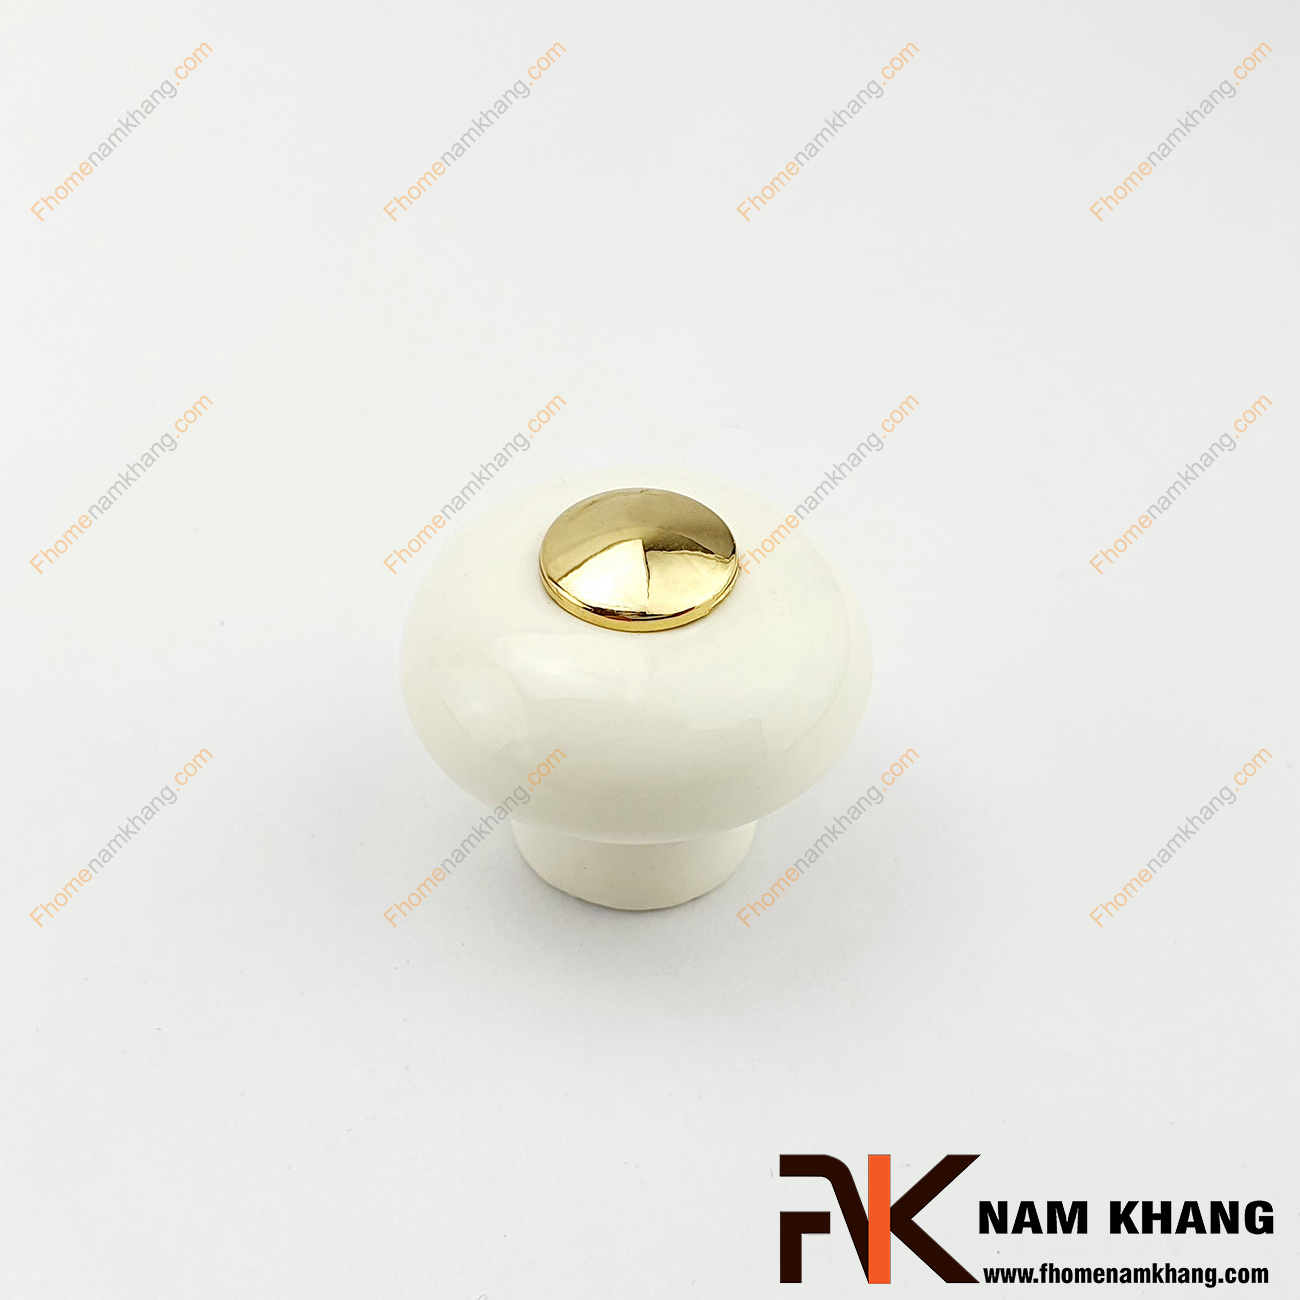 Núm cửa tủ dạng tròn chất liệu sứ màu trắng NK338-V có khuôn dạng nấm được phối hợp từ sứ cao cấp và phần lõi hợp kim mạ vàng bóng độc đáo.